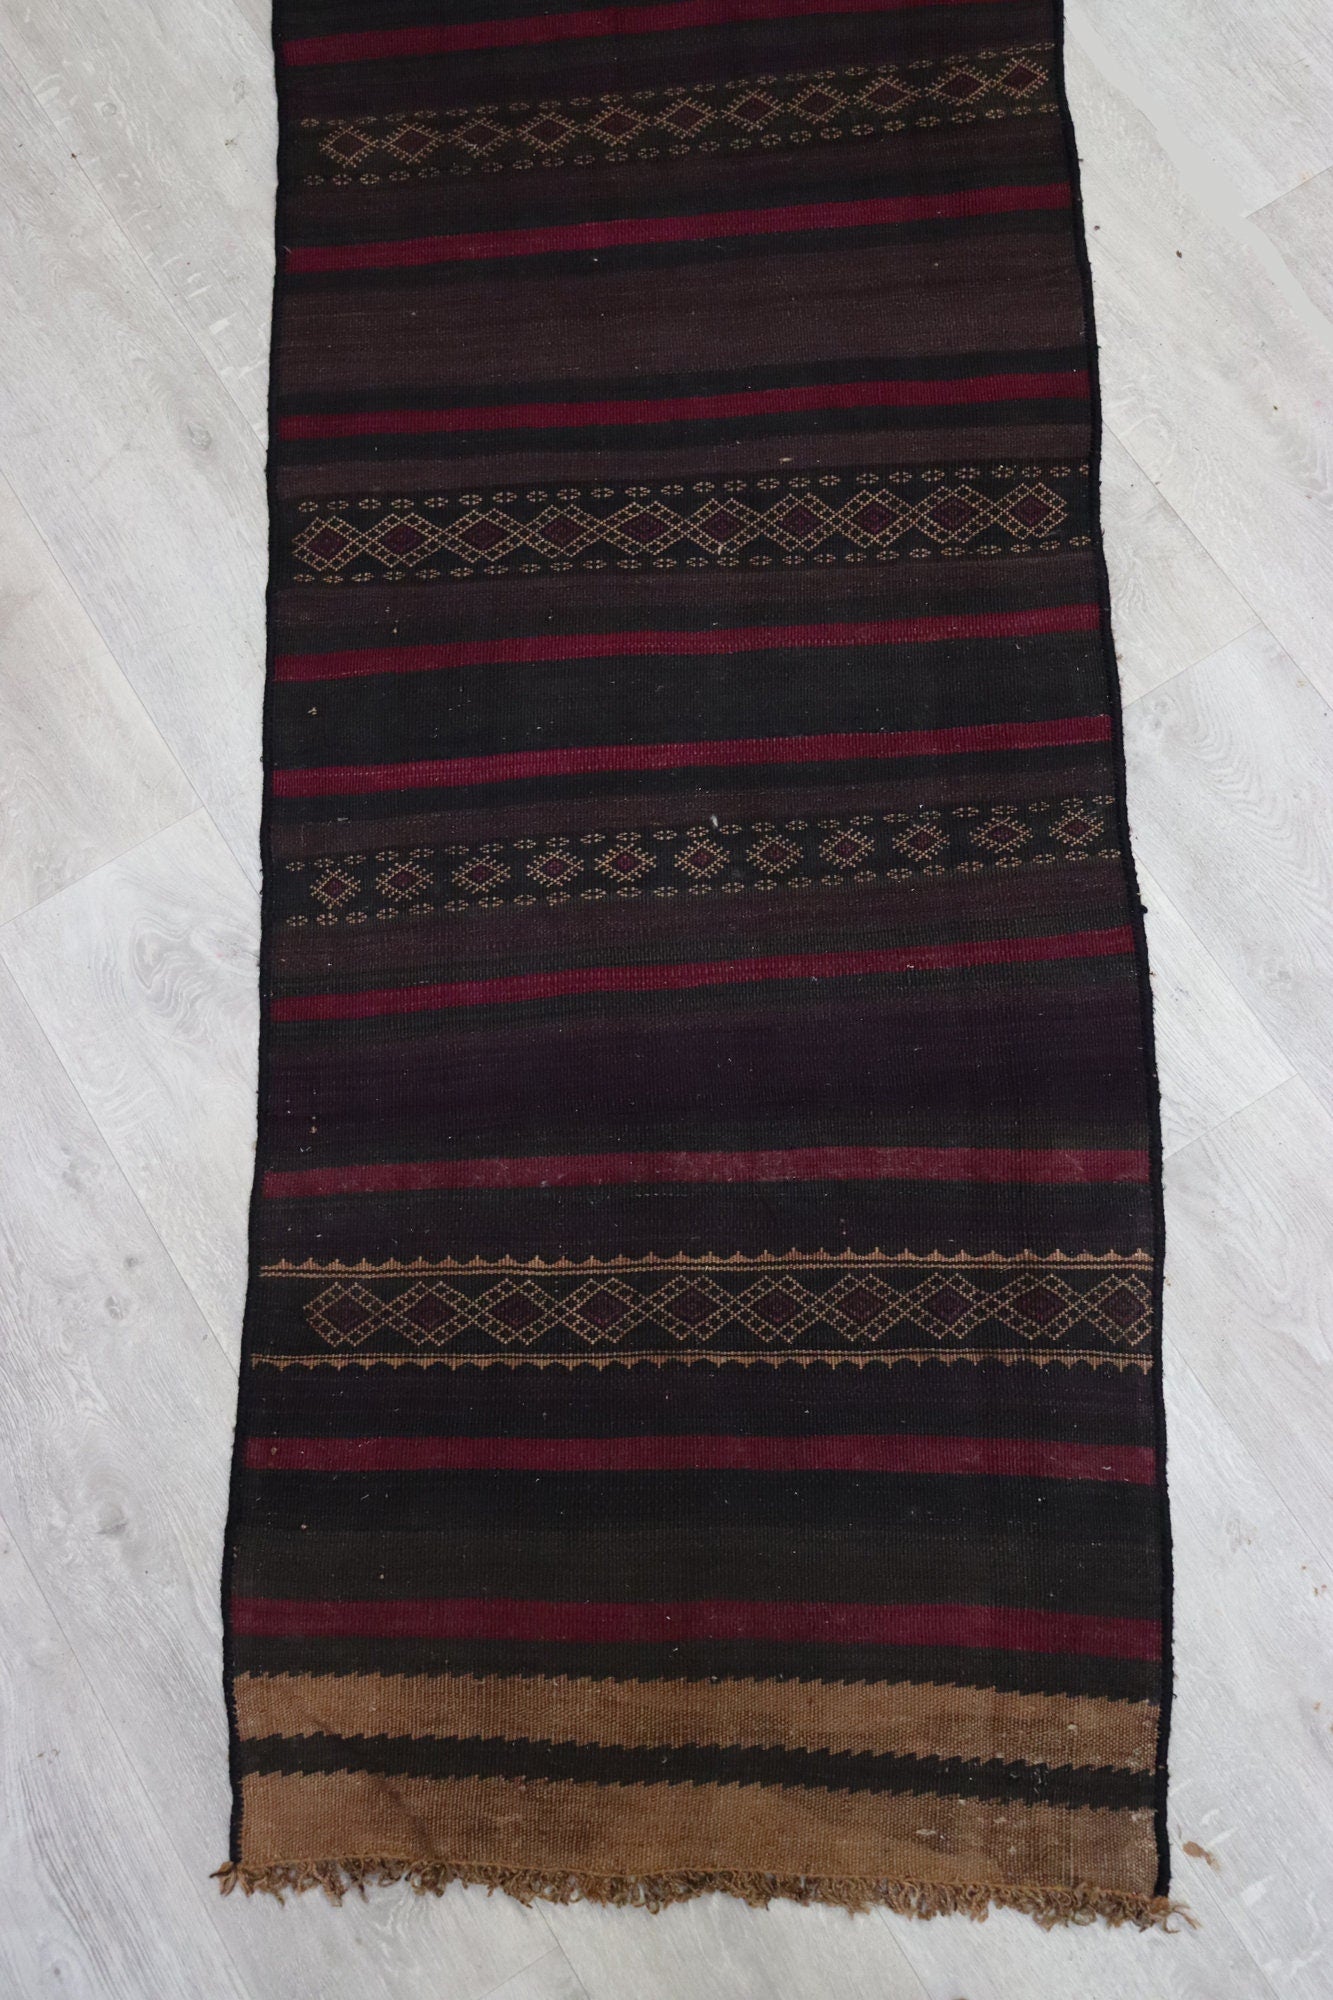 280x70 cm Antik orient handgewebte Teppich Nomaden Balouch sumakh kelim afghan Beloch Flur Läufer kilim Nr-410  Orientsbazar   